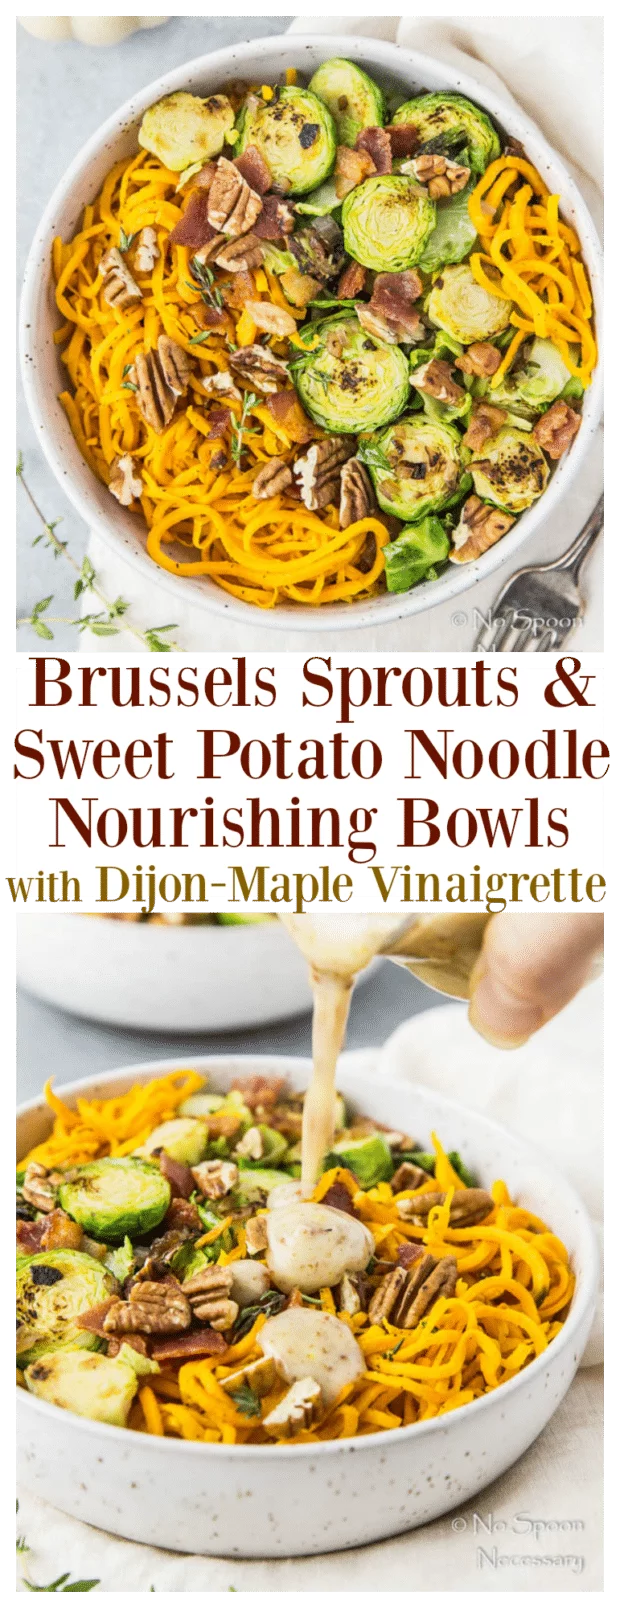 Autumn Brussels Sprouts & Sweet Potato Noodle Nourishing Bowls with Dijon-Maple Vinaigrette